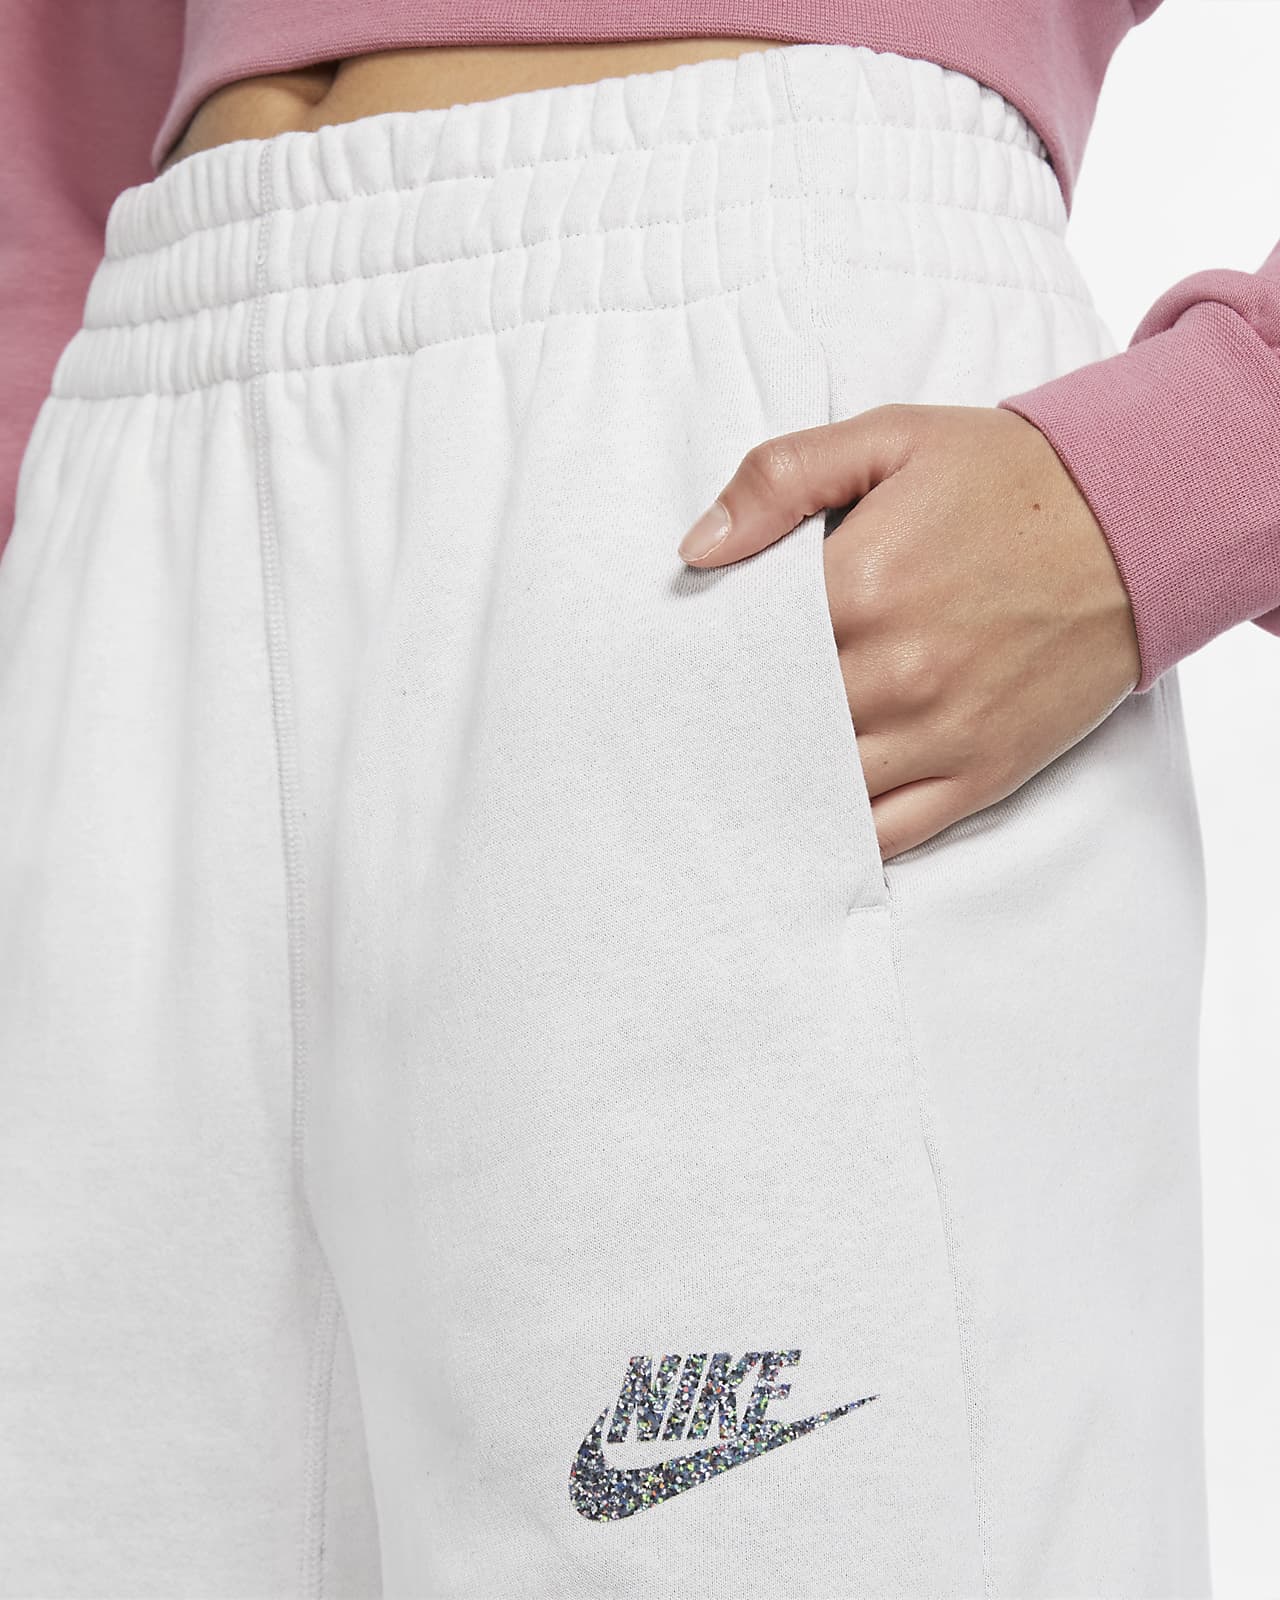 nike sportswear women shorts